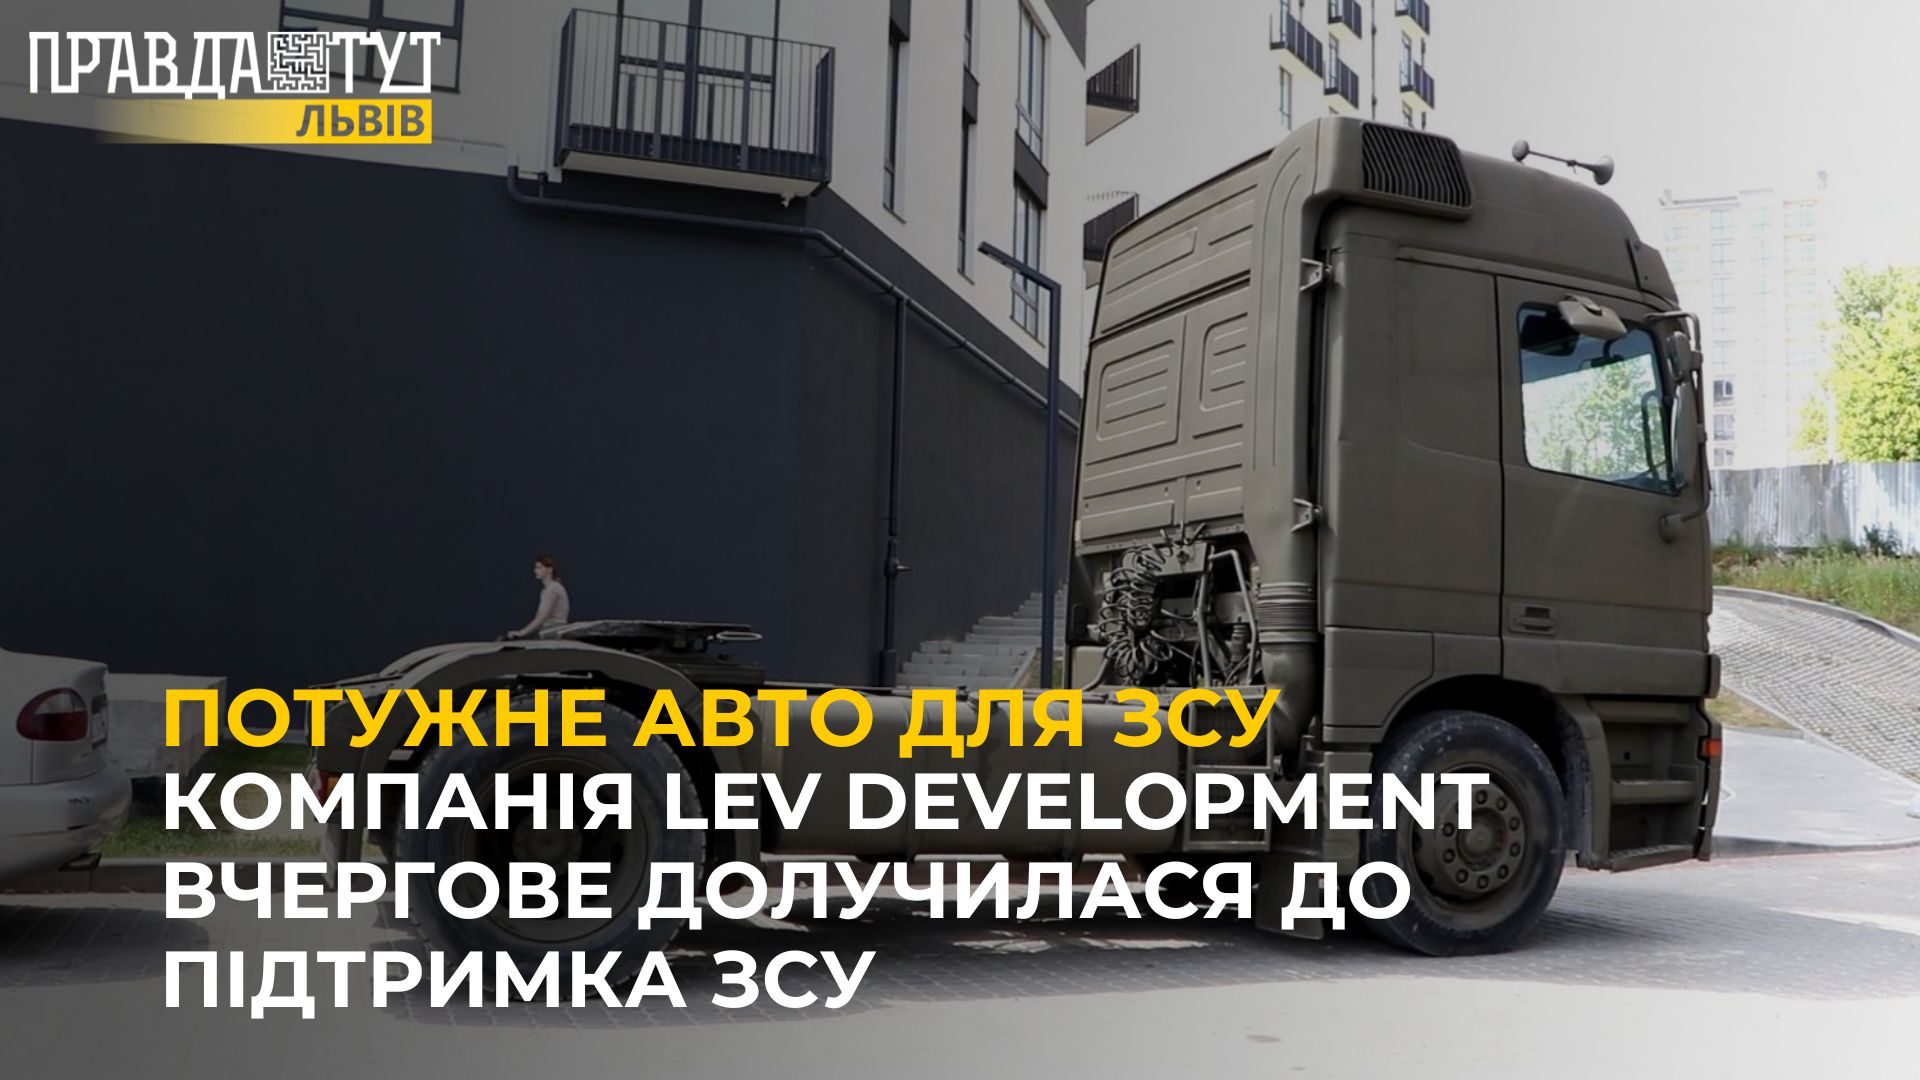 Компанія Lev Development вчергове долучилася до підтримка ЗСУ